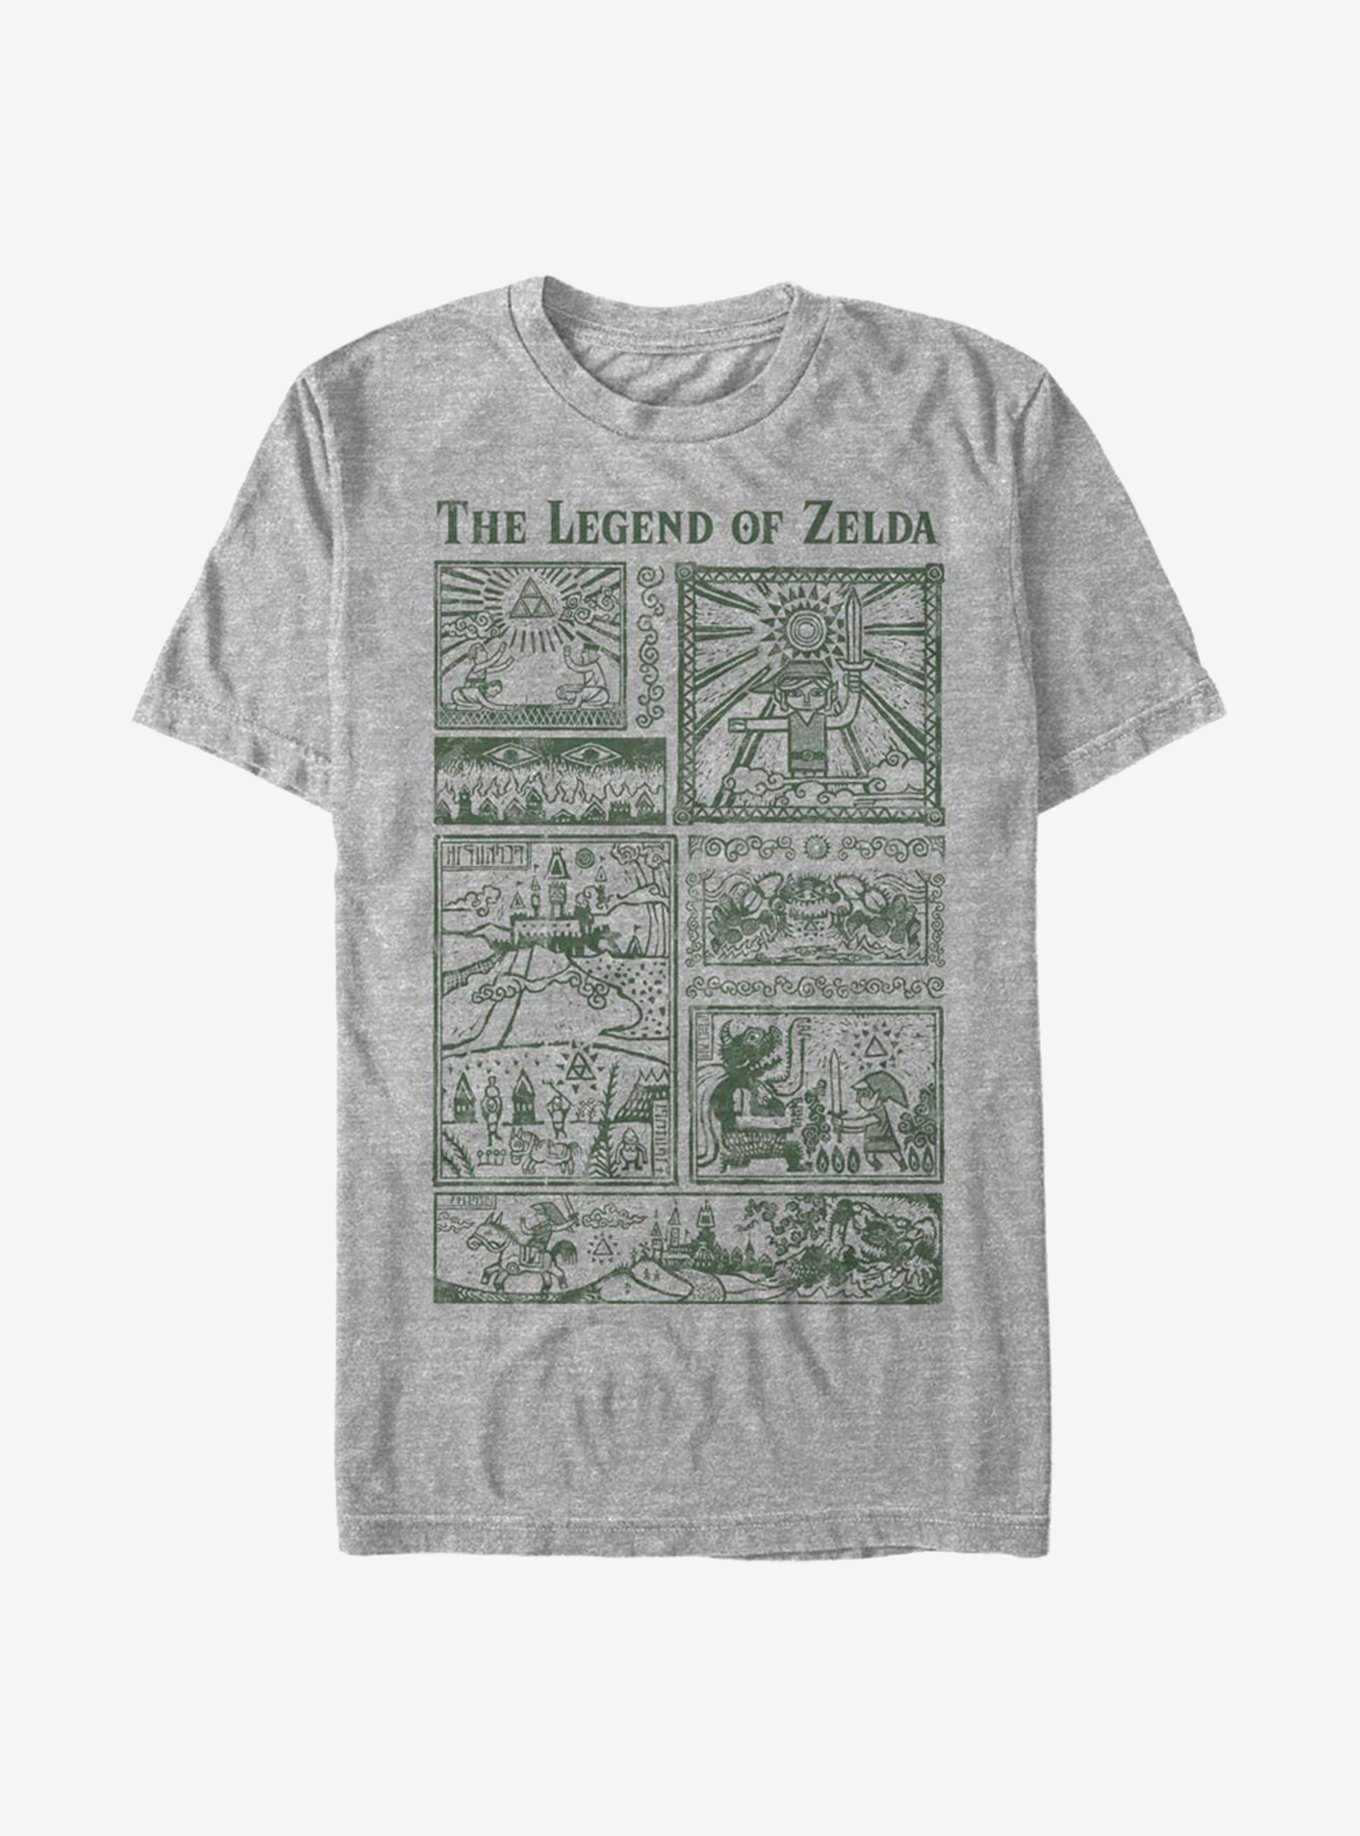 The Legend Of Zelda The Legend Retold T-Shirt, , hi-res